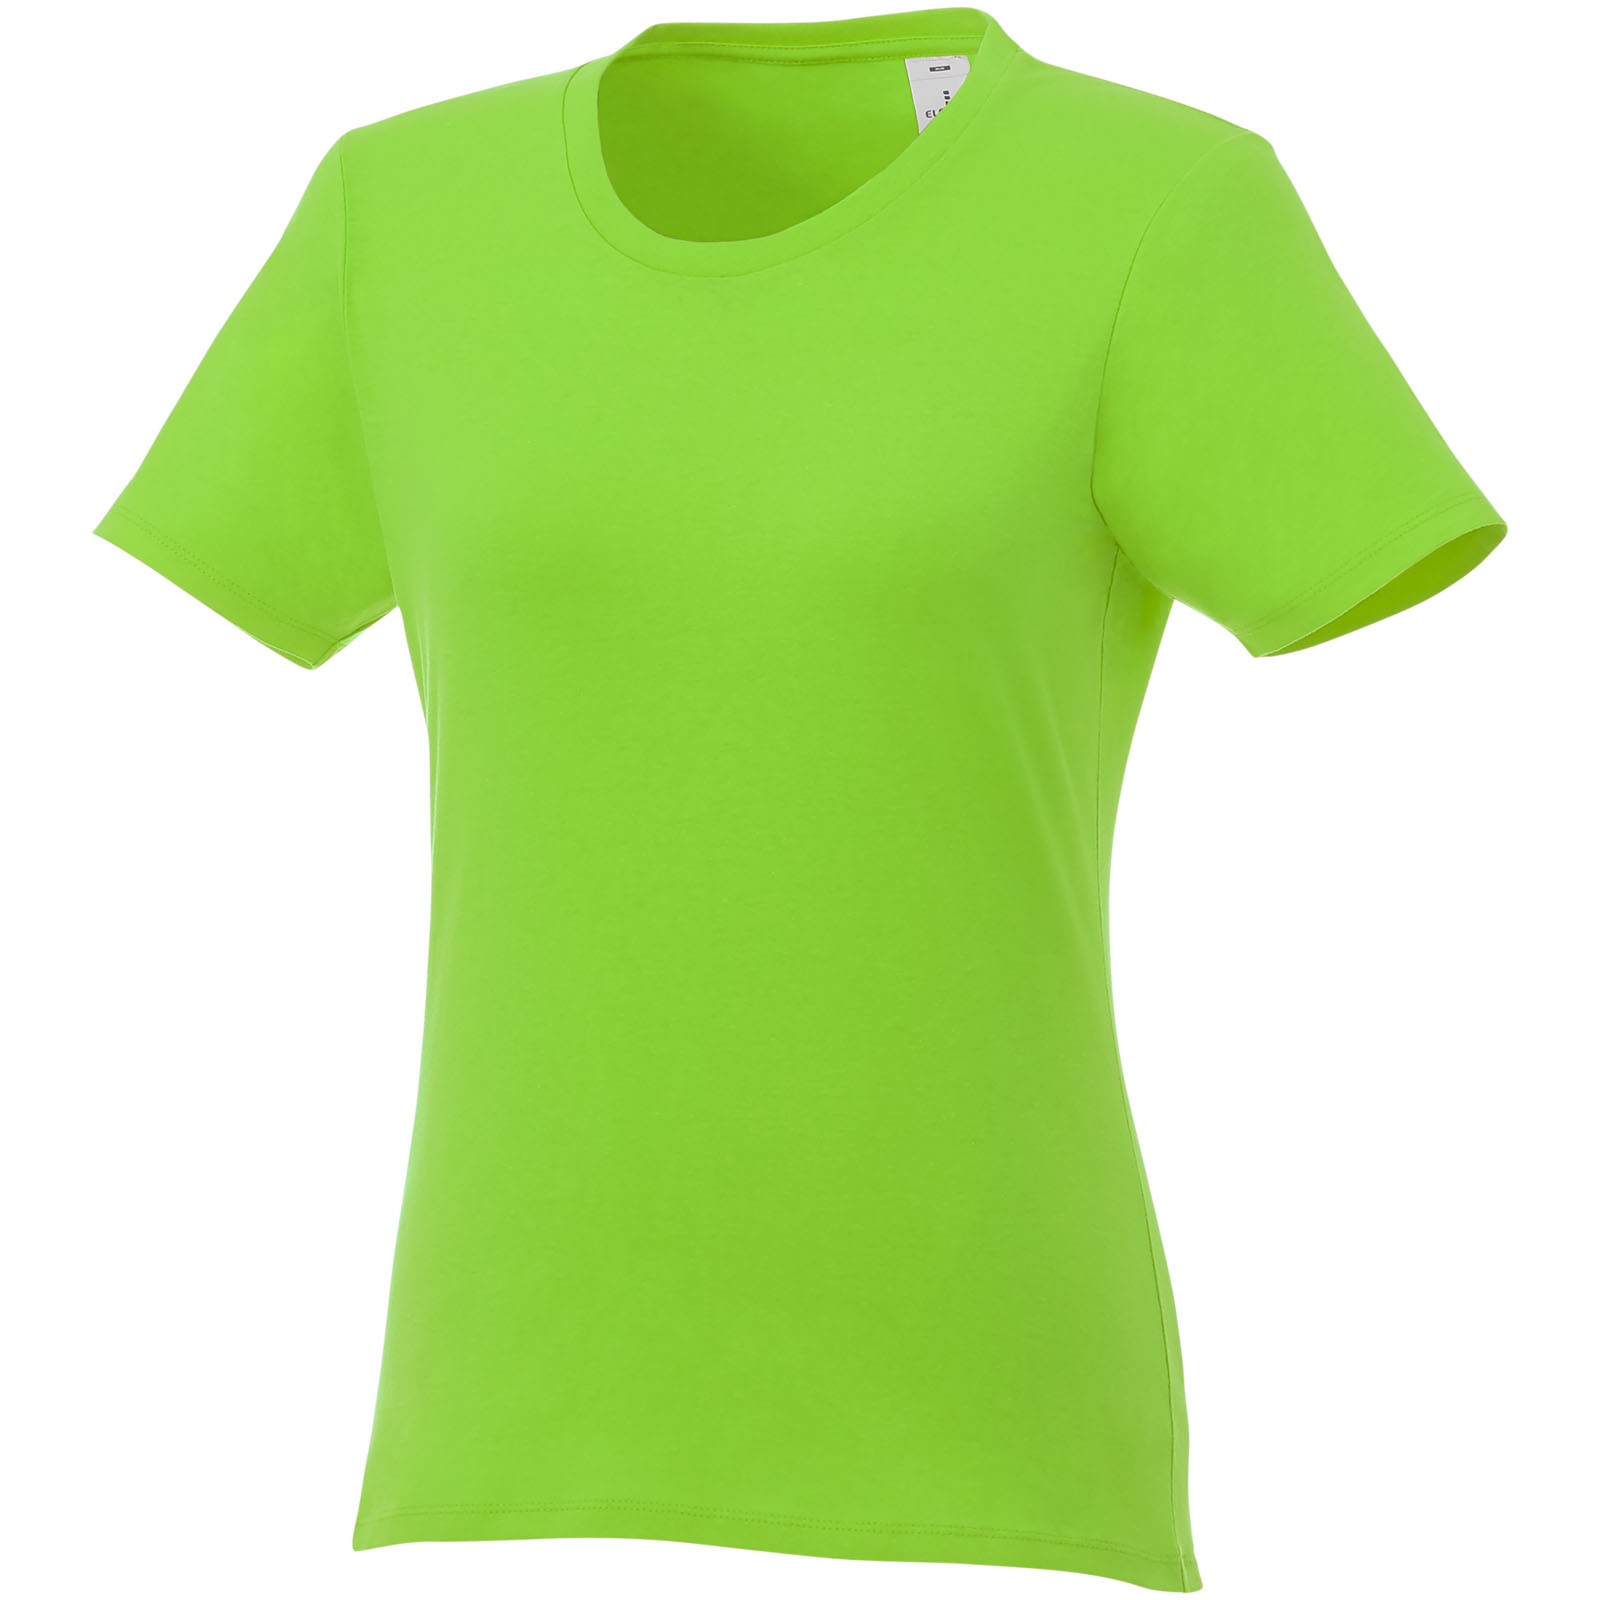 T-shirt damski z krótkim rękawem Heros - Zielone jabłuszko / S